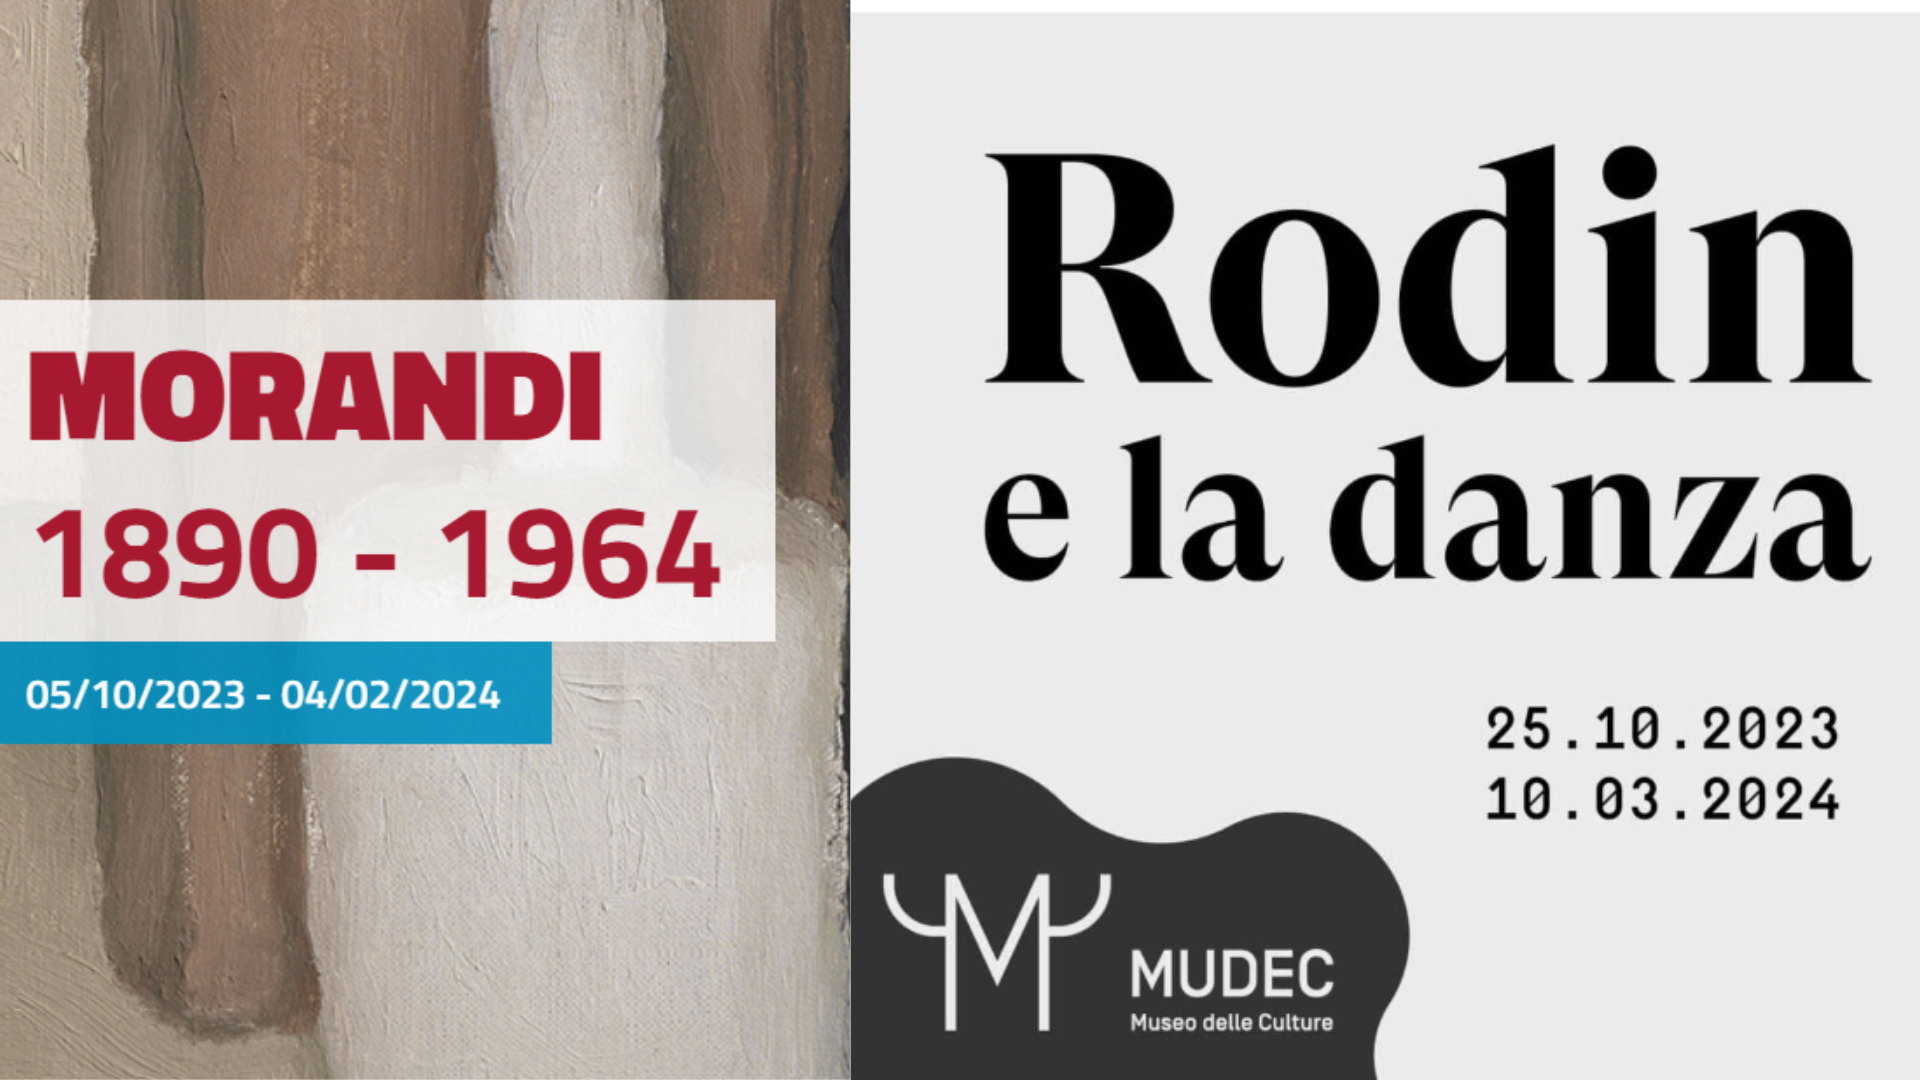 Al momento stai visualizzando Mostre Anisa 2023: Morandi, Rodin